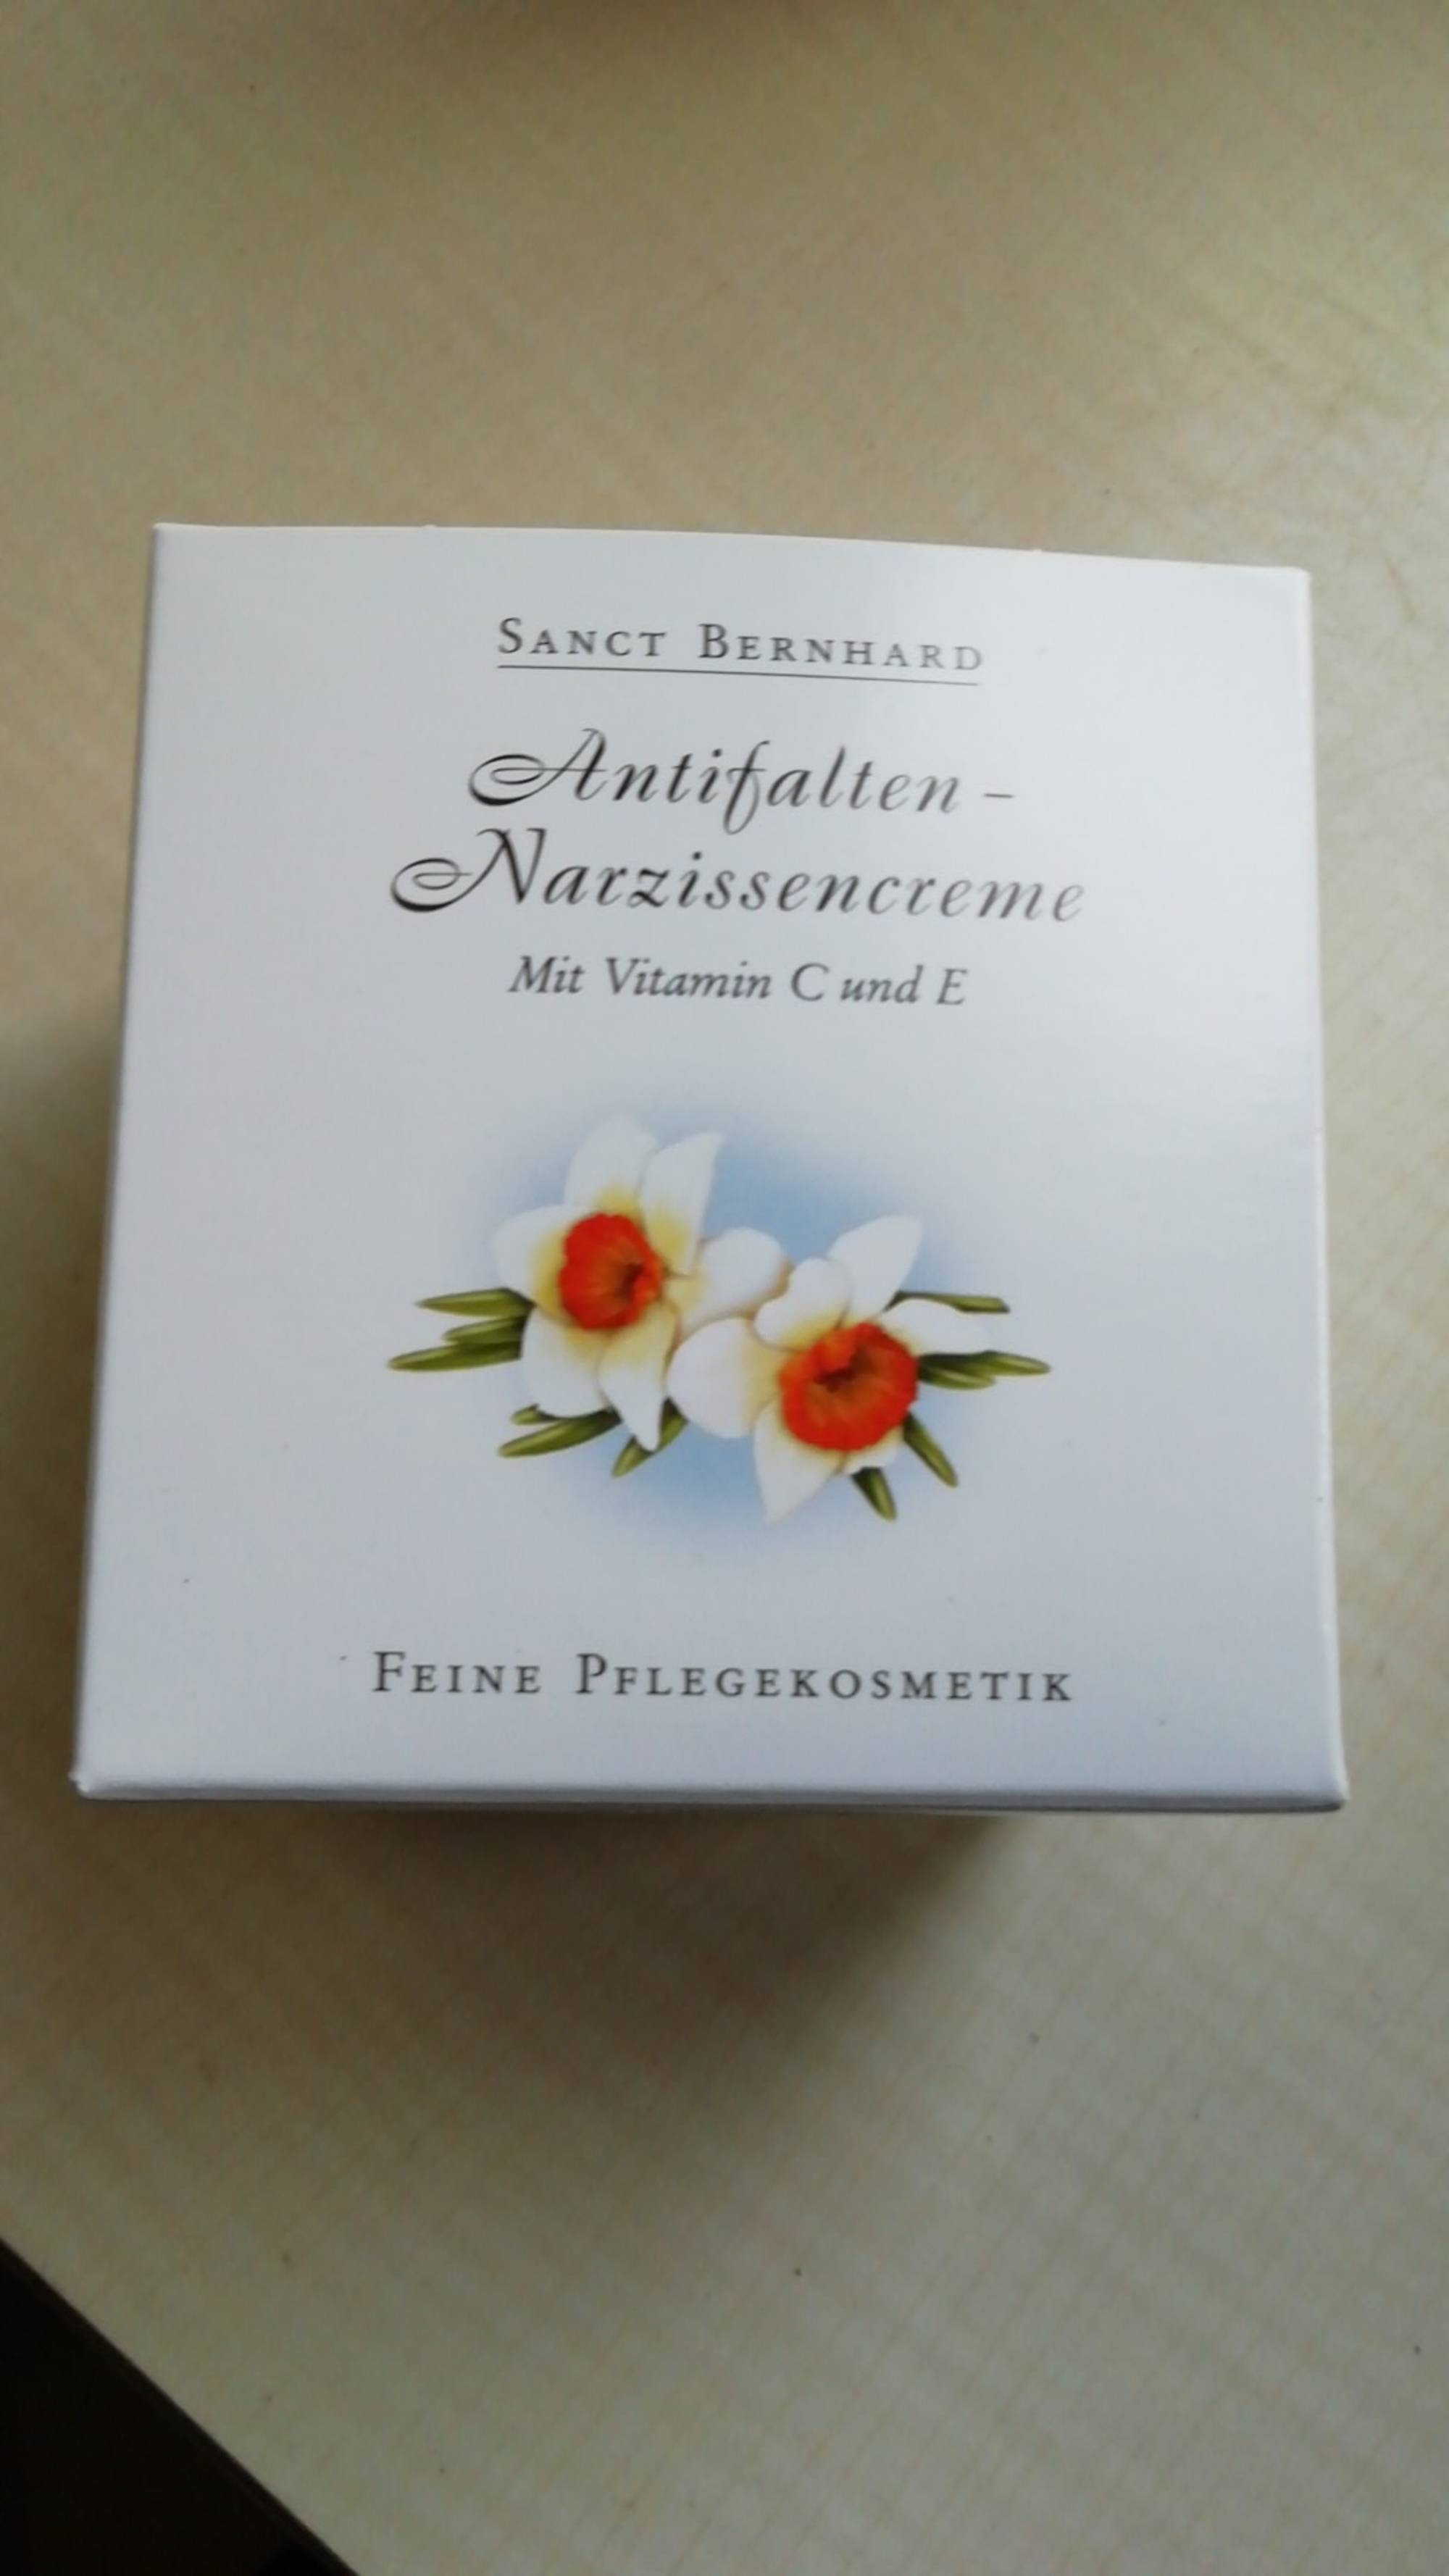 SANCT BERNHARD - Antifalten-narzissencreme 